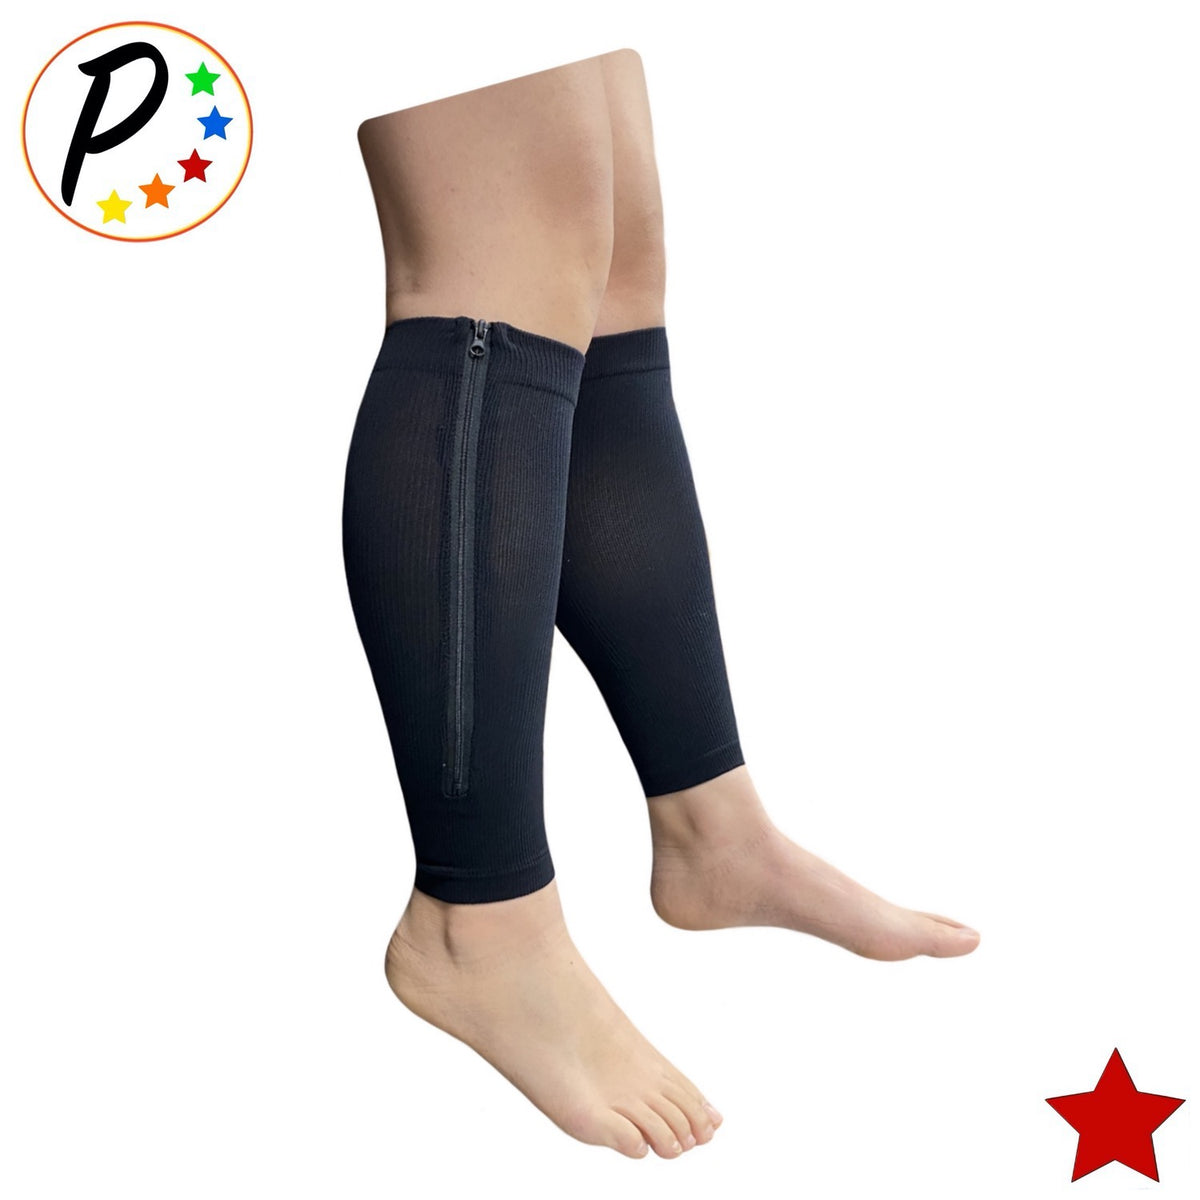 Hoshea Calf Compression Sleeves For Men & Women (20-30mmHg) - Leg